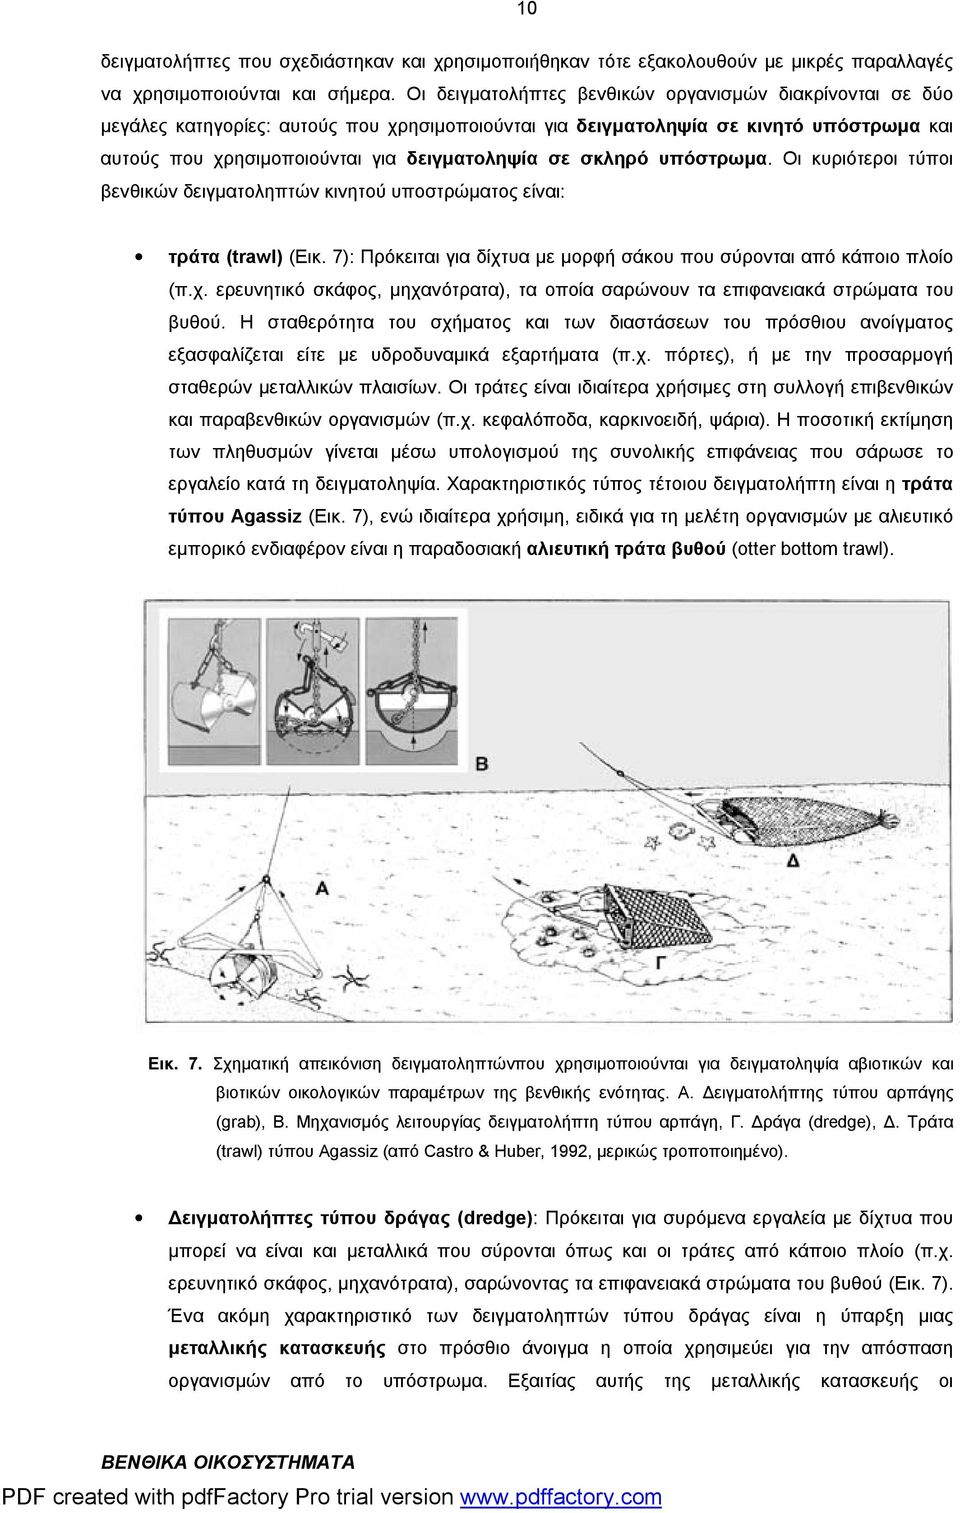 σκληρό υπόστρωμα. Οι κυριότεροι τύποι βενθικών δειγματοληπτών κινητού υποστρώματος είναι: τράτα (trawl) (Εικ. 7): Πρόκειται για δίχτ